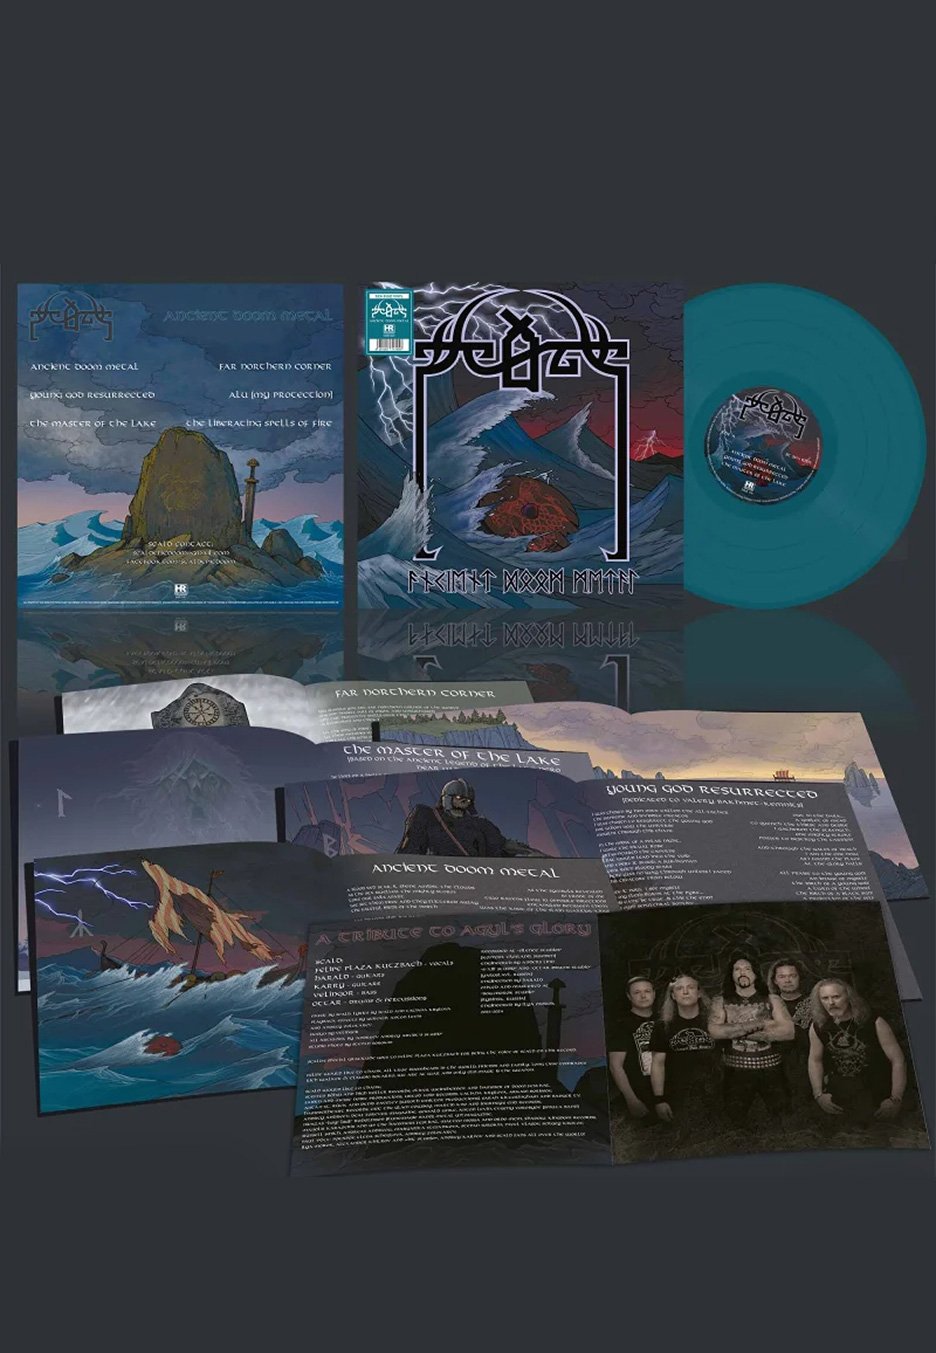 Scald - Ancient Doom Metal Ltd. Sea Blue - Colored Vinyl